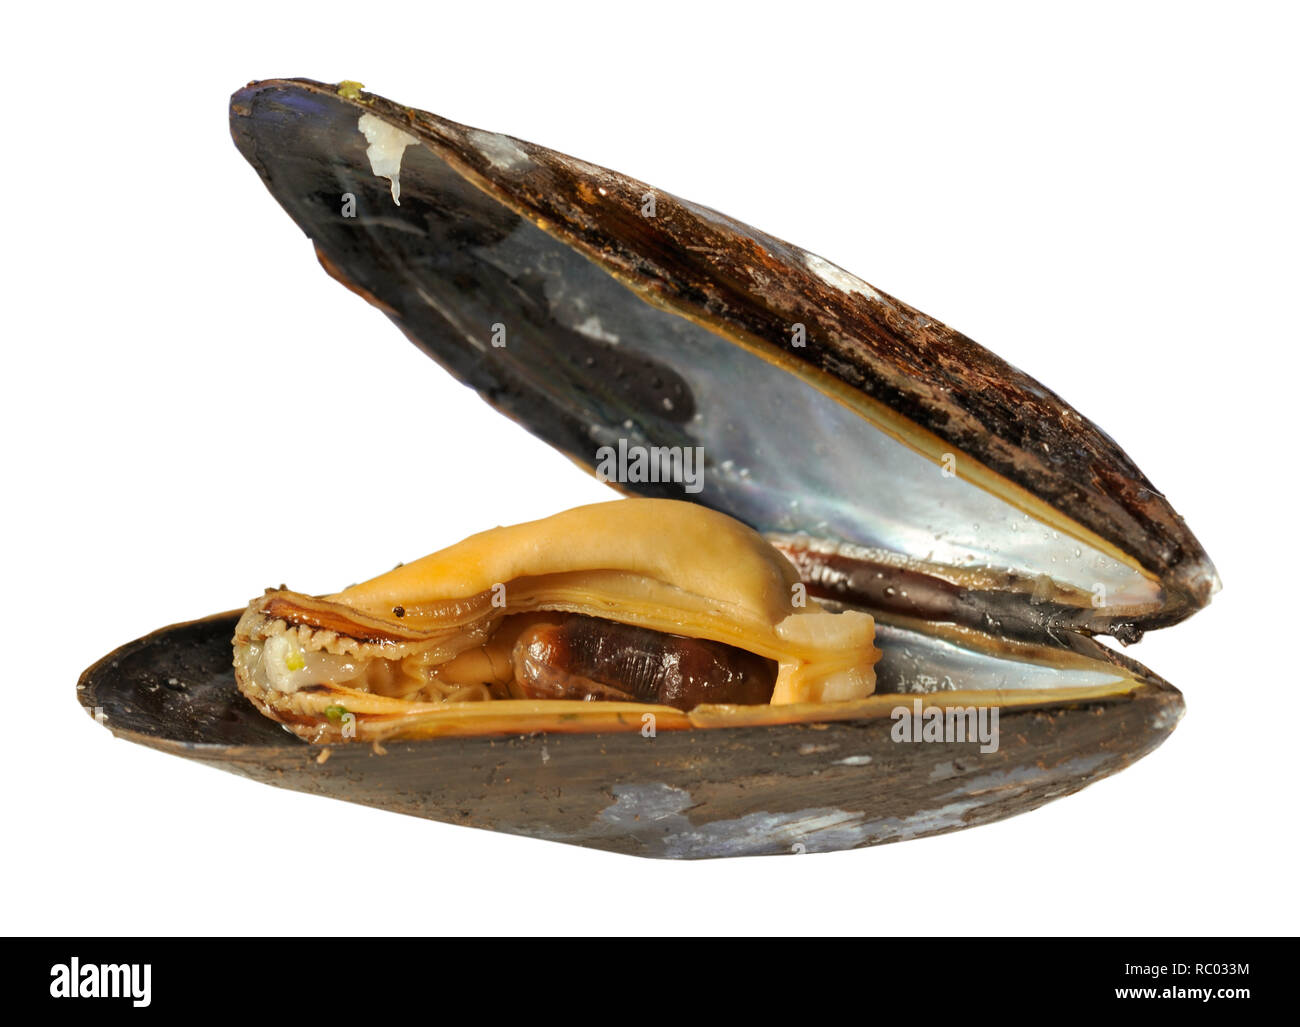 Frische Miesmuschel | Fresh mussel in a shell Stock Photo